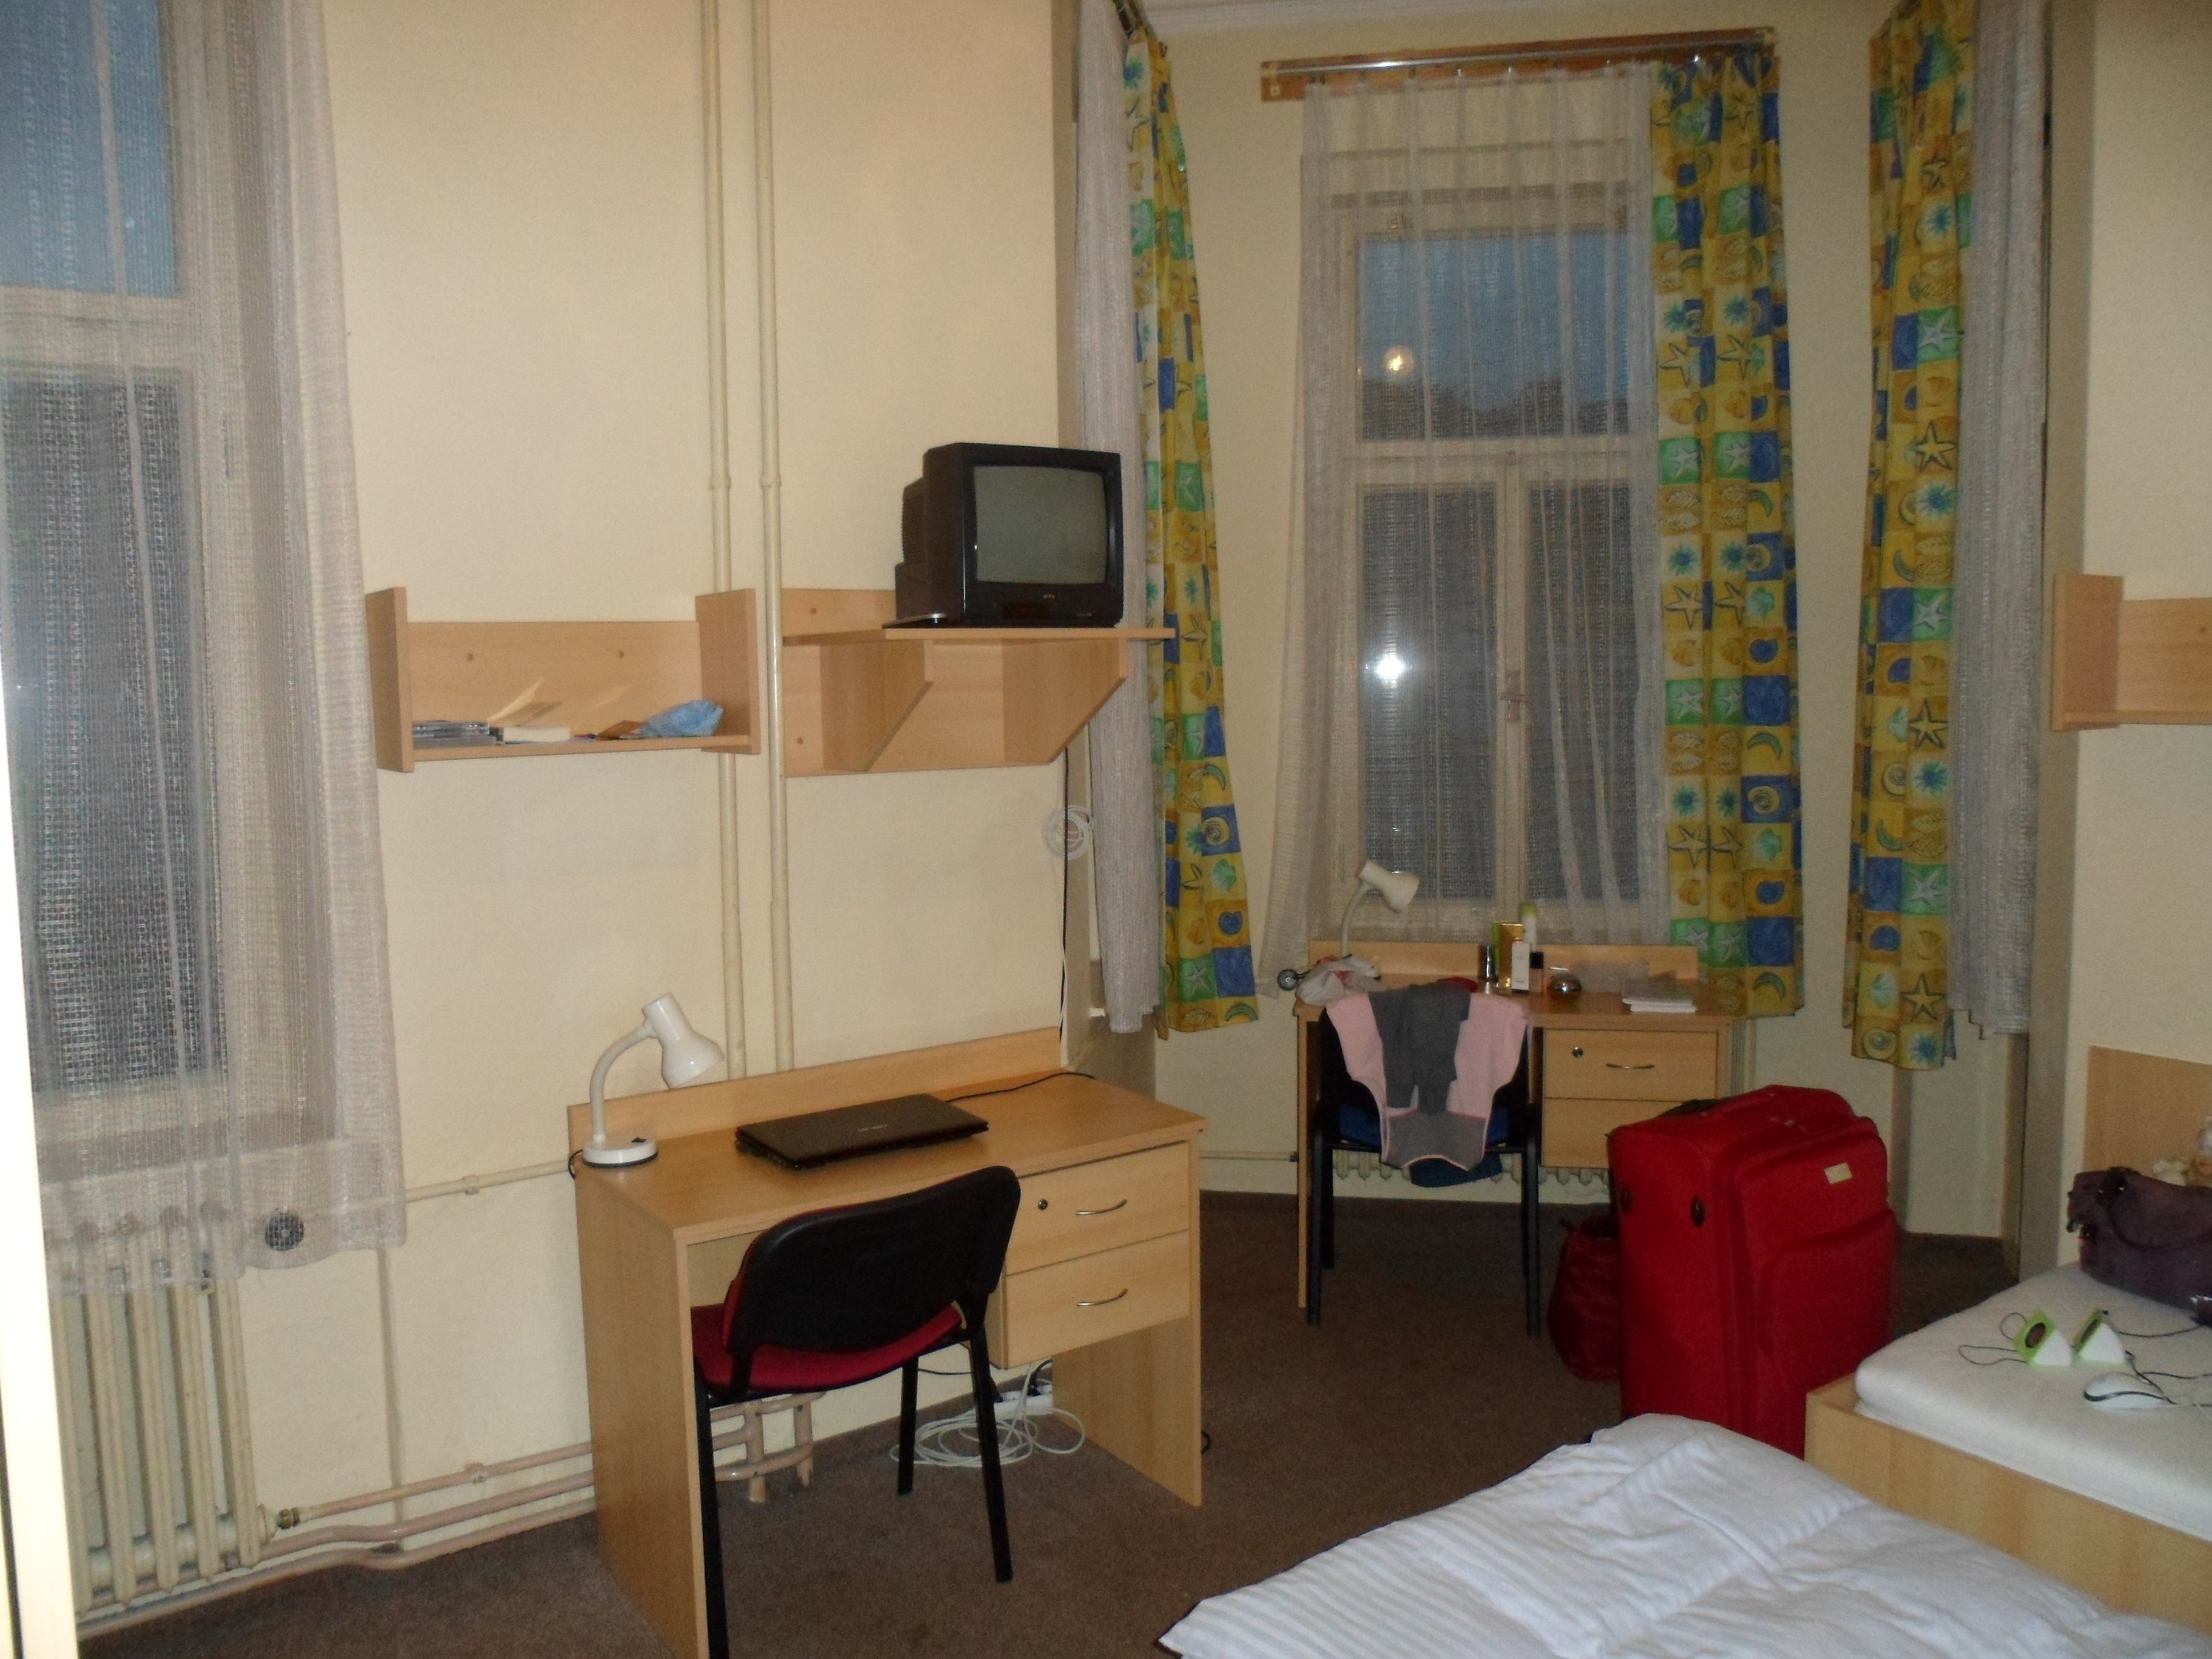 Общежитие комната калининград. Комната в общежитии. Планировка комнаты в общежитии. Уютная комната в общежитии. Фото комнаты в общежитии.